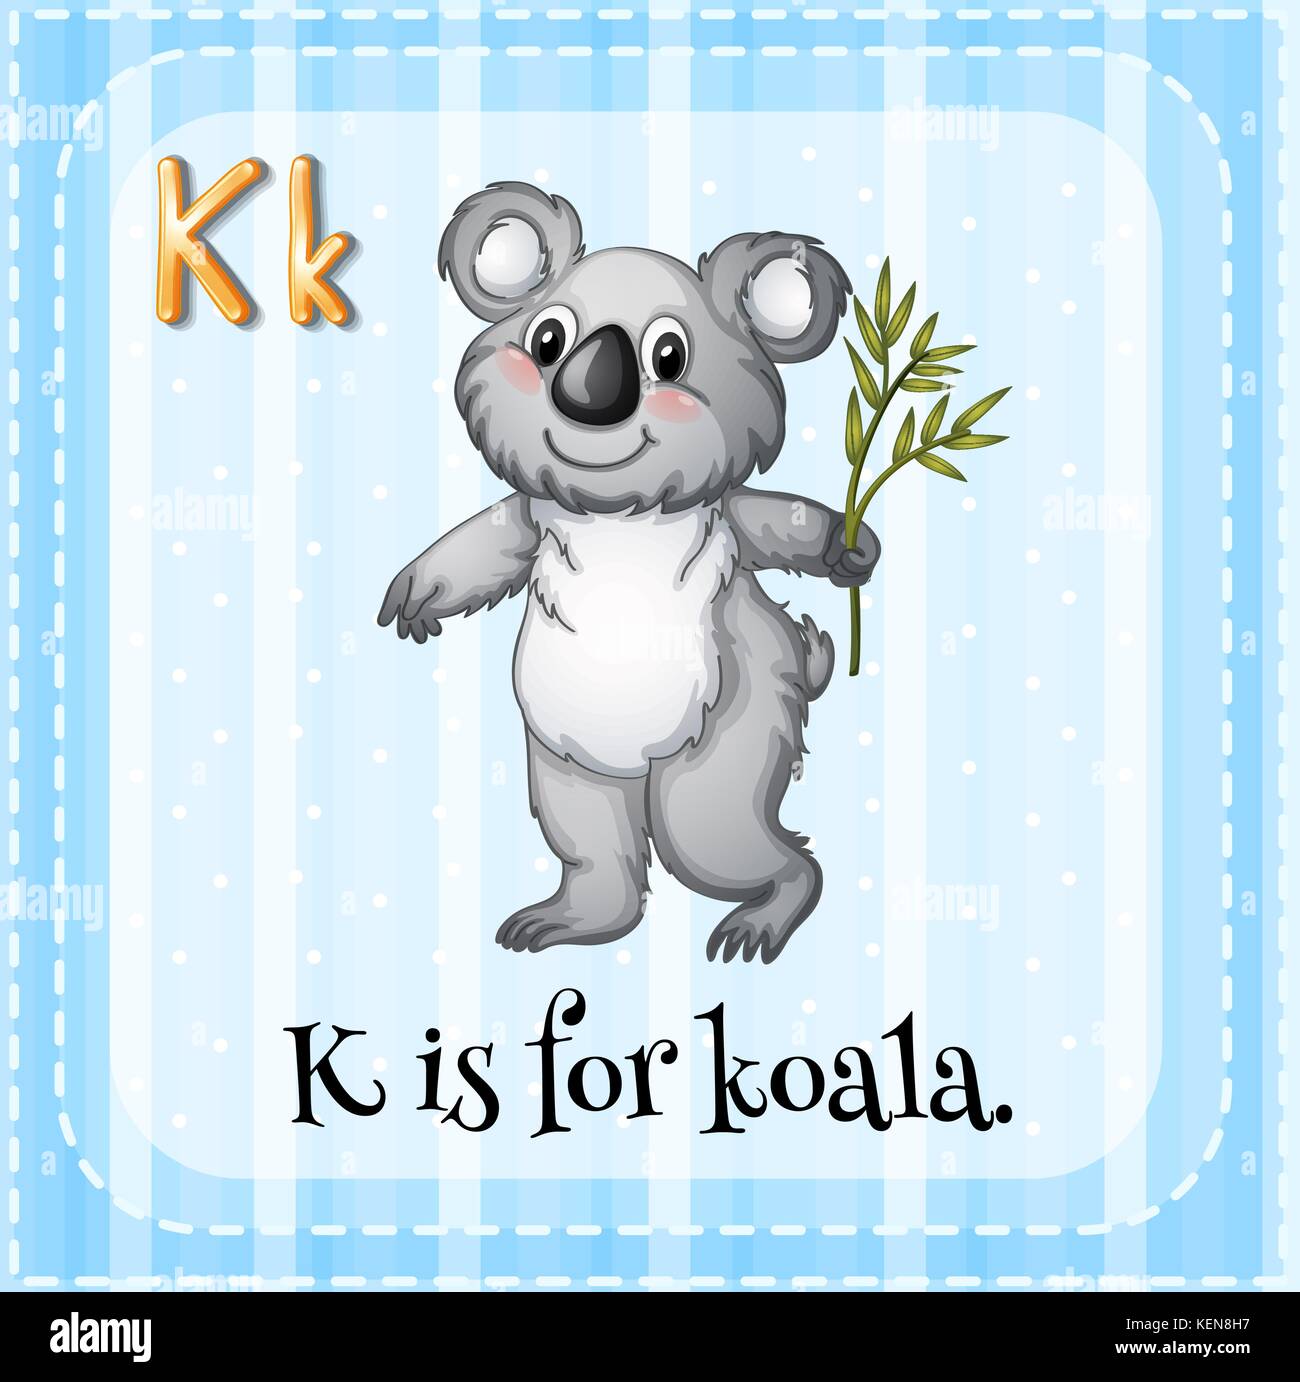 Illustration of a letter K is for koala Stock Vector Image & Art - Alamy